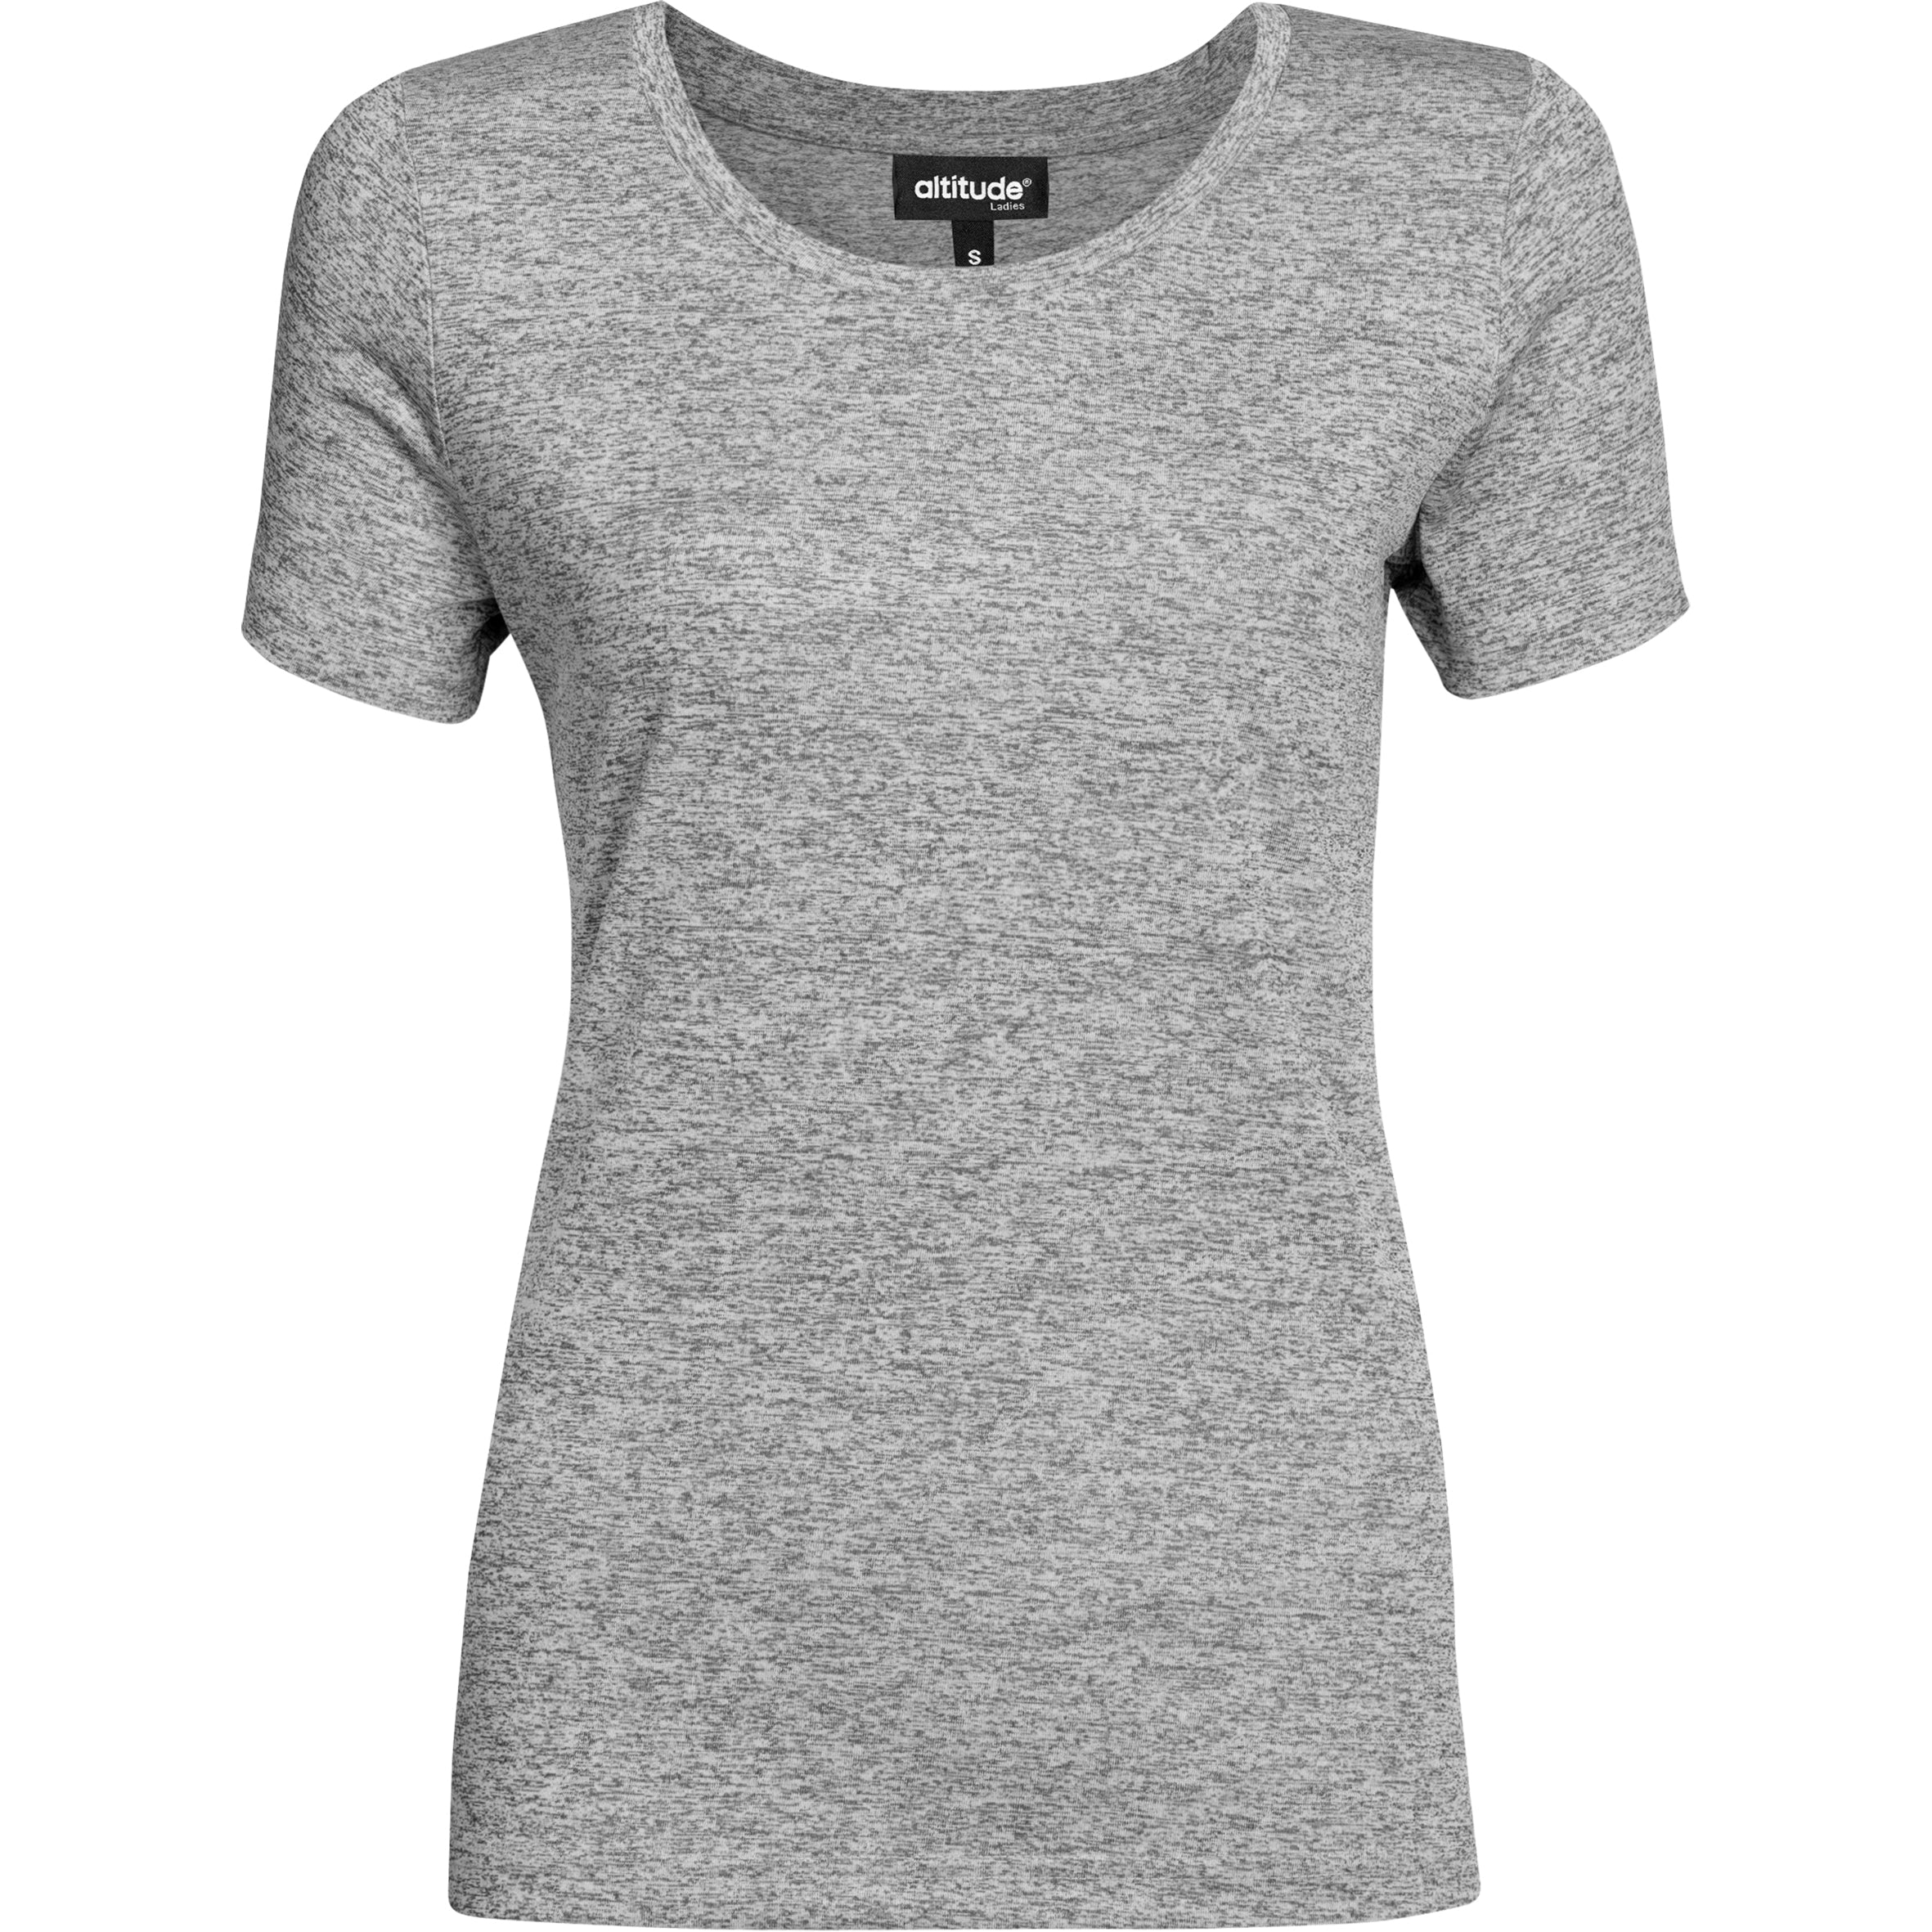 Ladies Oregon Melange T-Shirt-